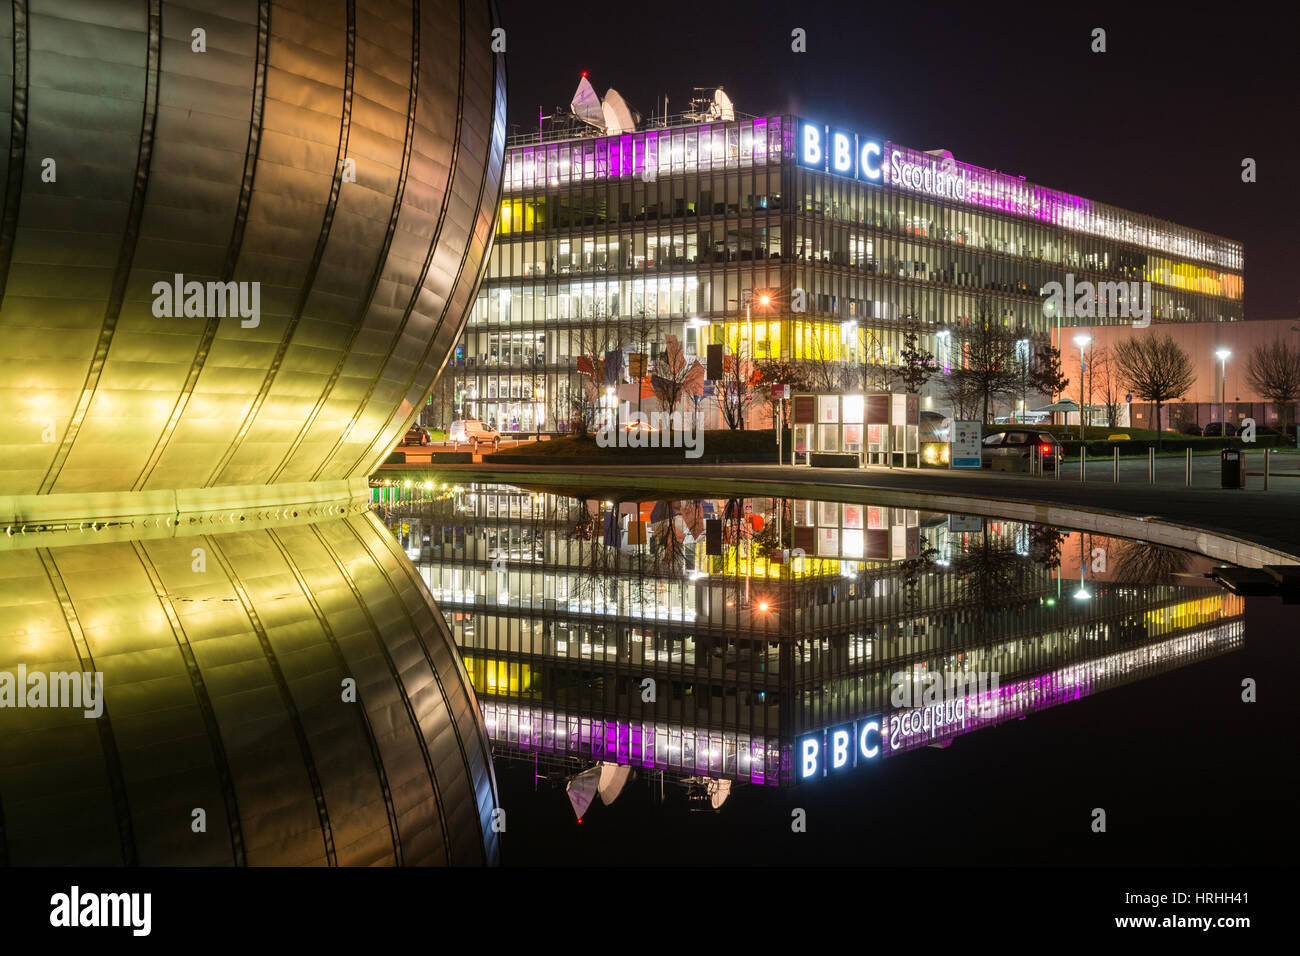 BBC Scotland siège, reflétée dans l'eau entourant Glasgow IMAX, Pacific Quay, Glasgow, Ecosse Banque D'Images